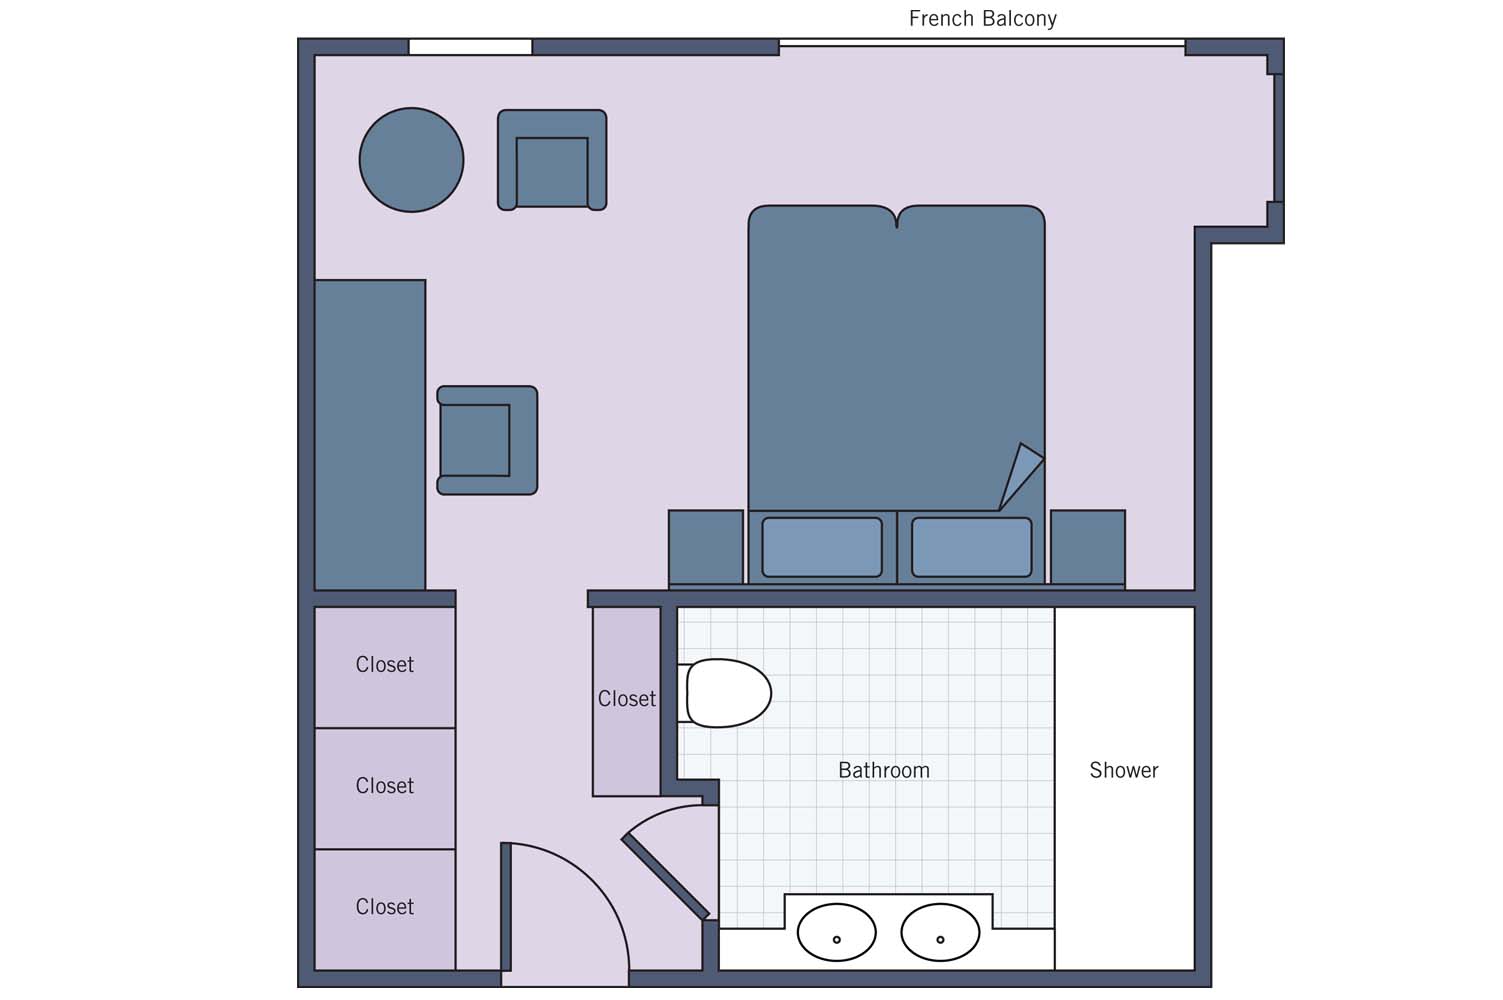 UNI River Empress Suite floor plan